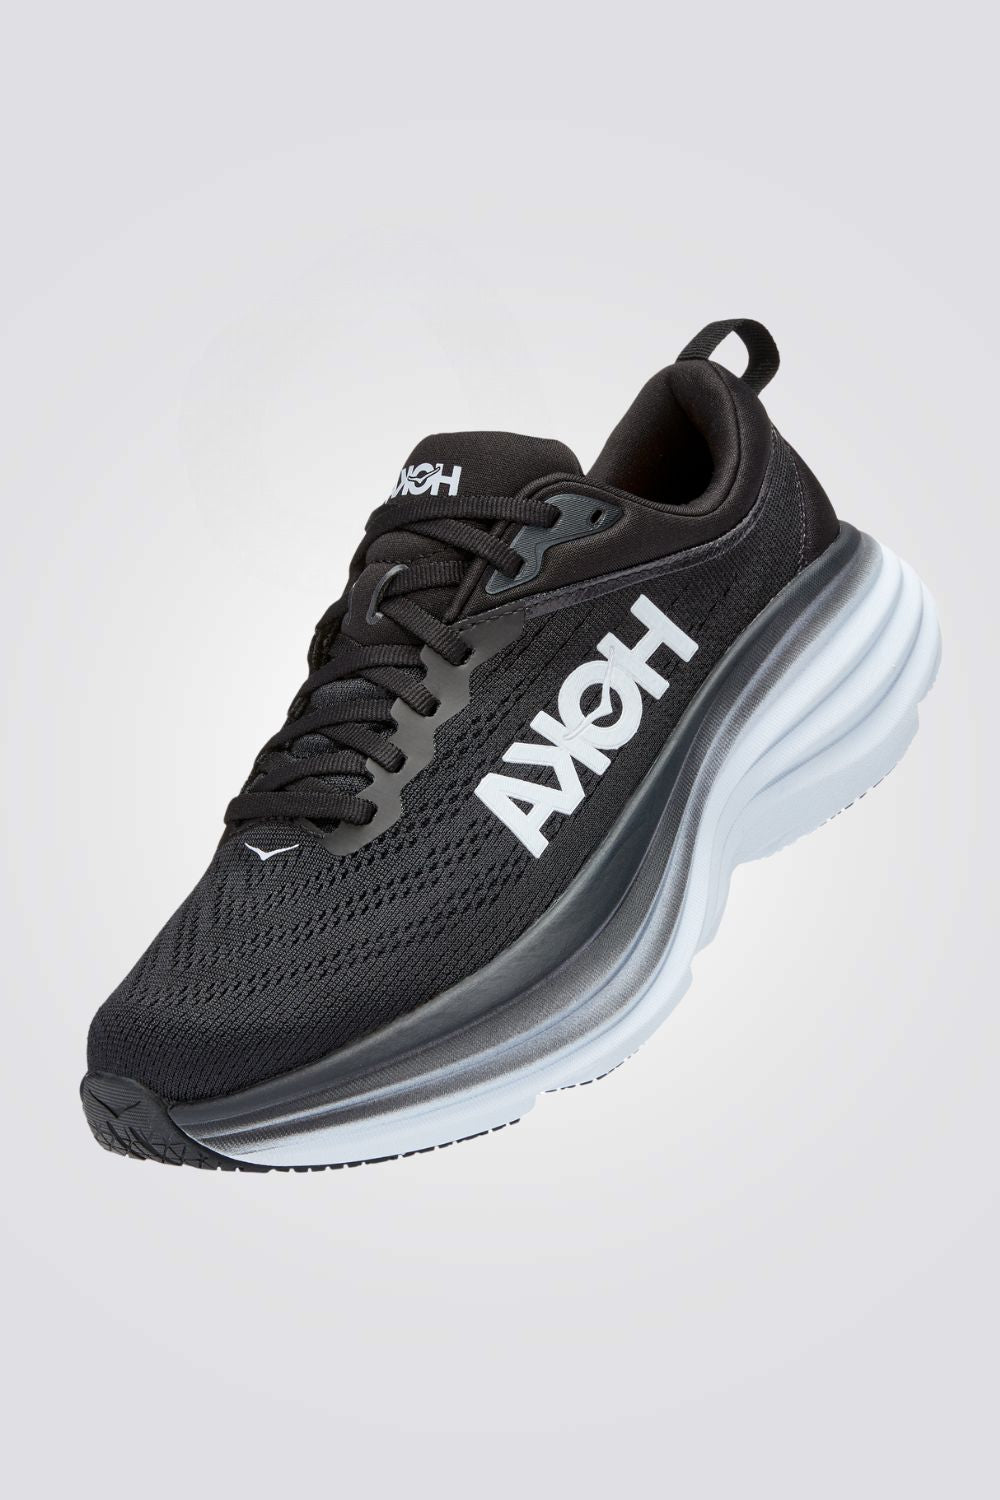 נעלי ספורט לגברים Bondi 8 בצבע שחור ולבן